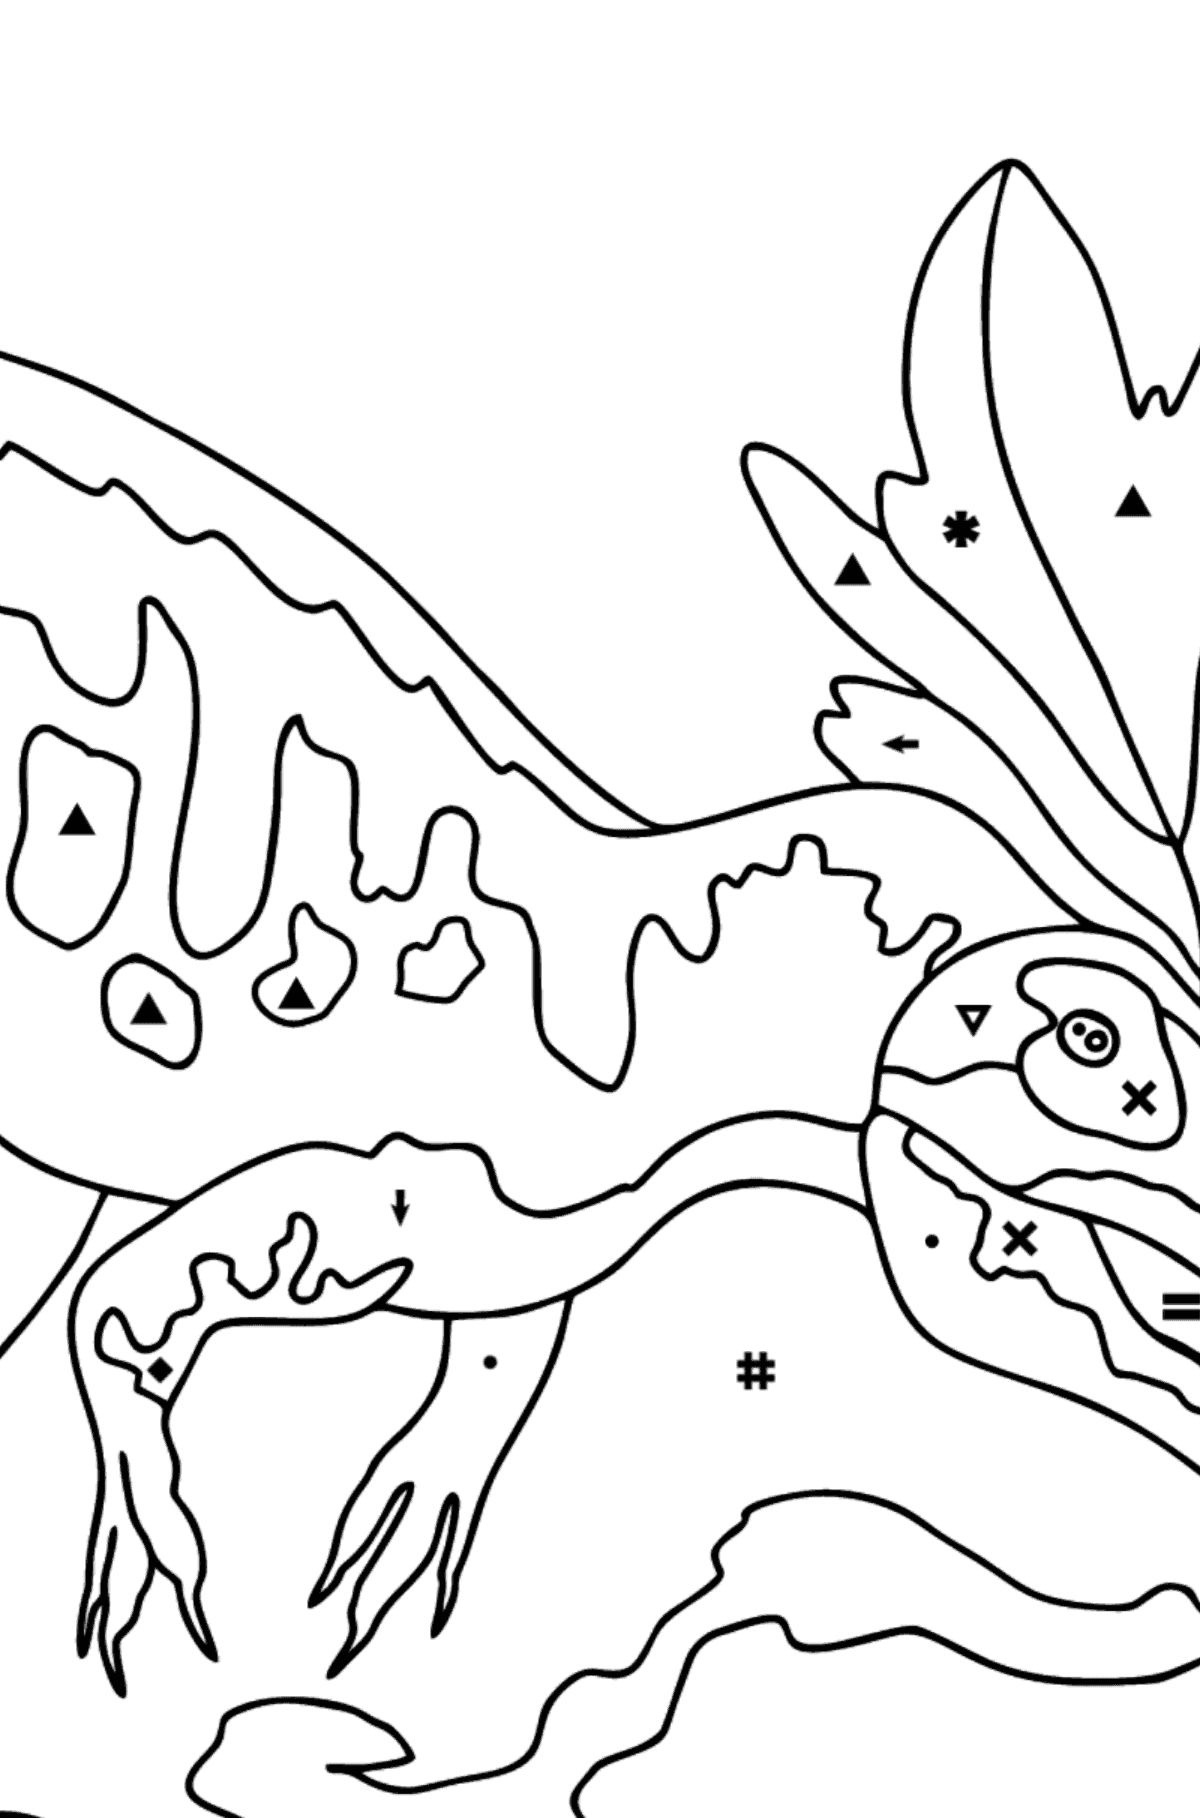 Раскраска Динозавр - По Символам для Детей